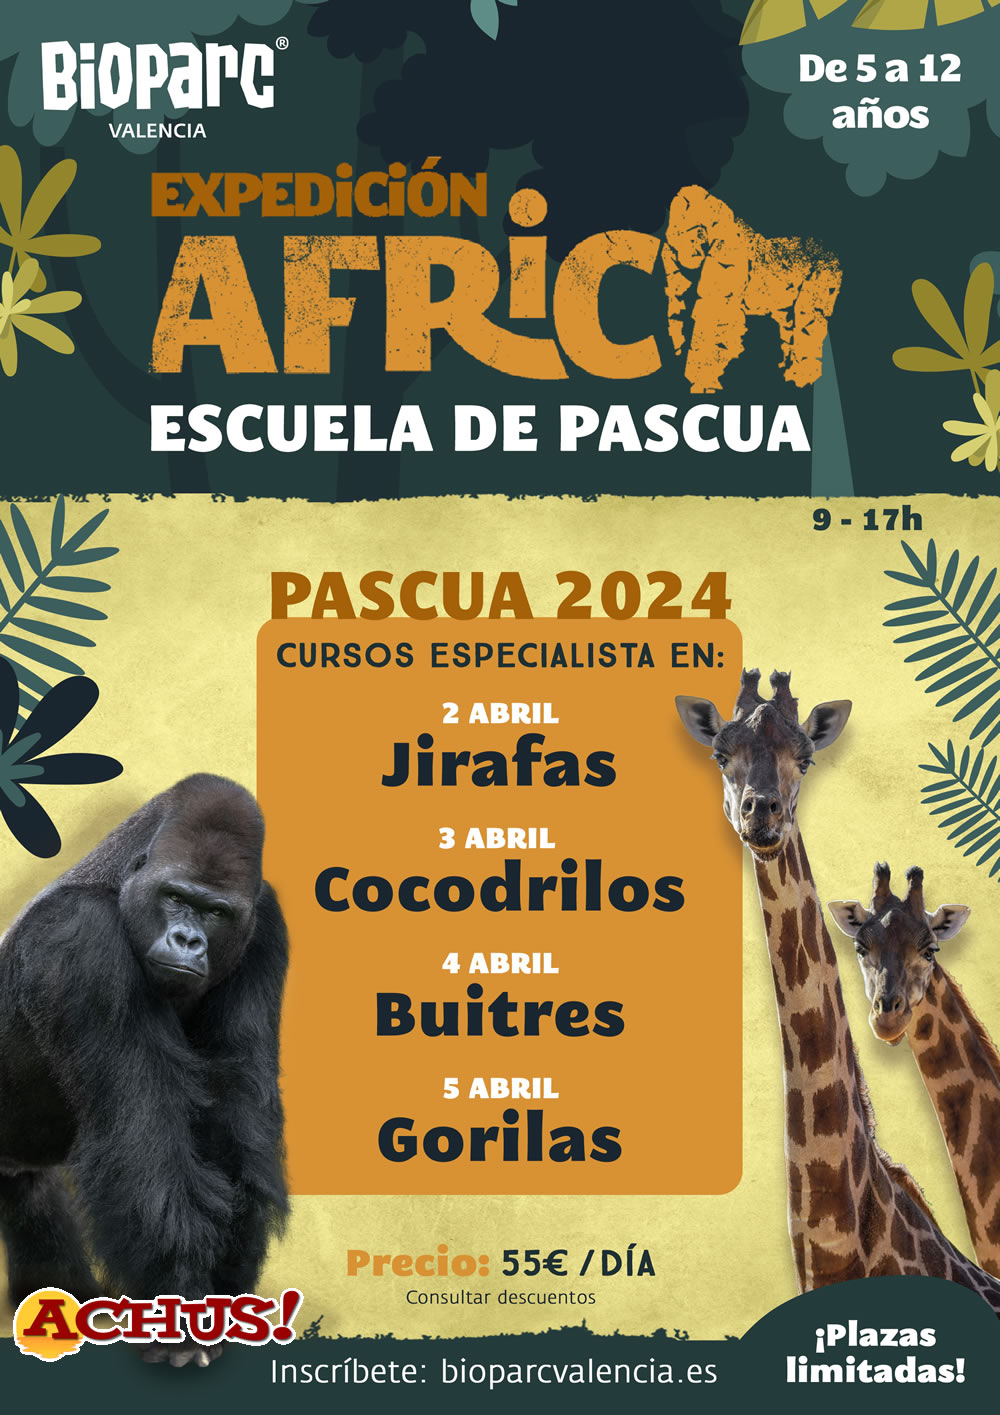 Bioparc Valencia abre las inscripciones para la Escuela de Pascua "Expedición África"